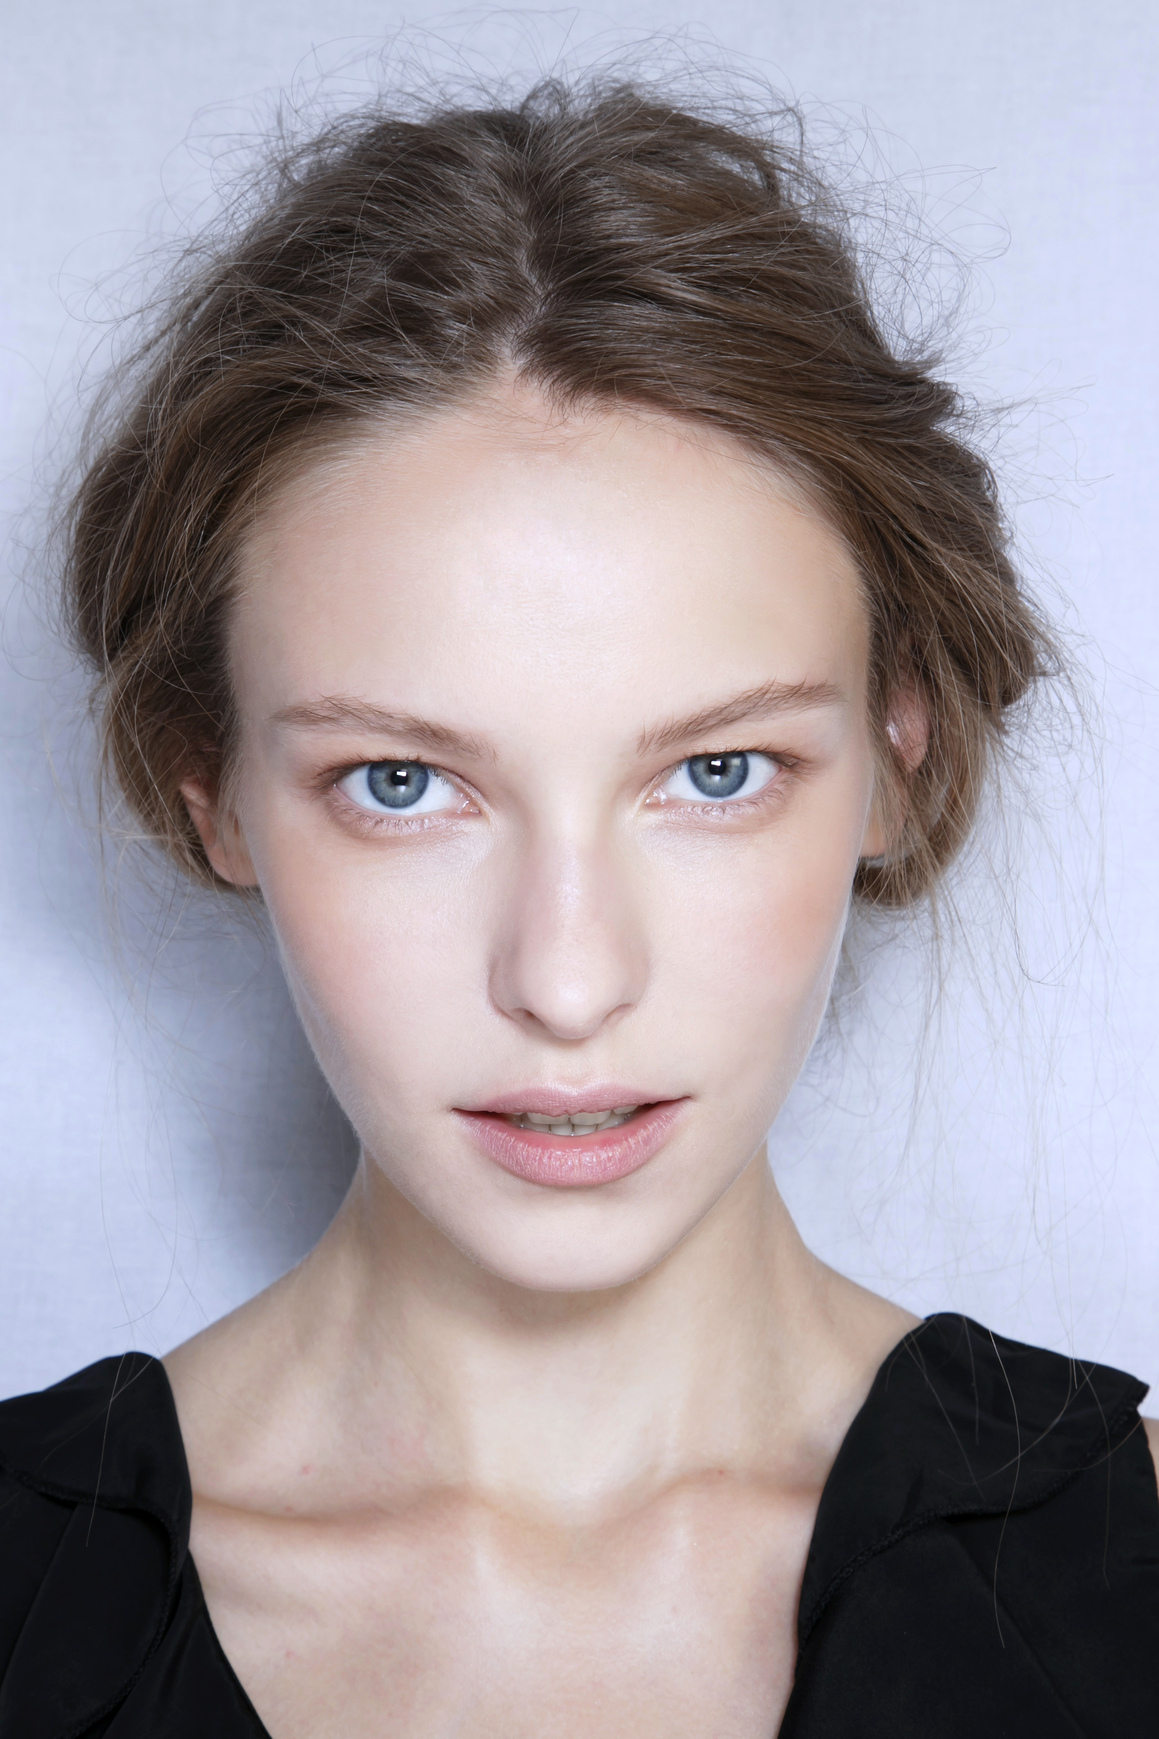 Feminine Eye Makeup 8 Ways To Get Natural Looking Makeup Stylecaster